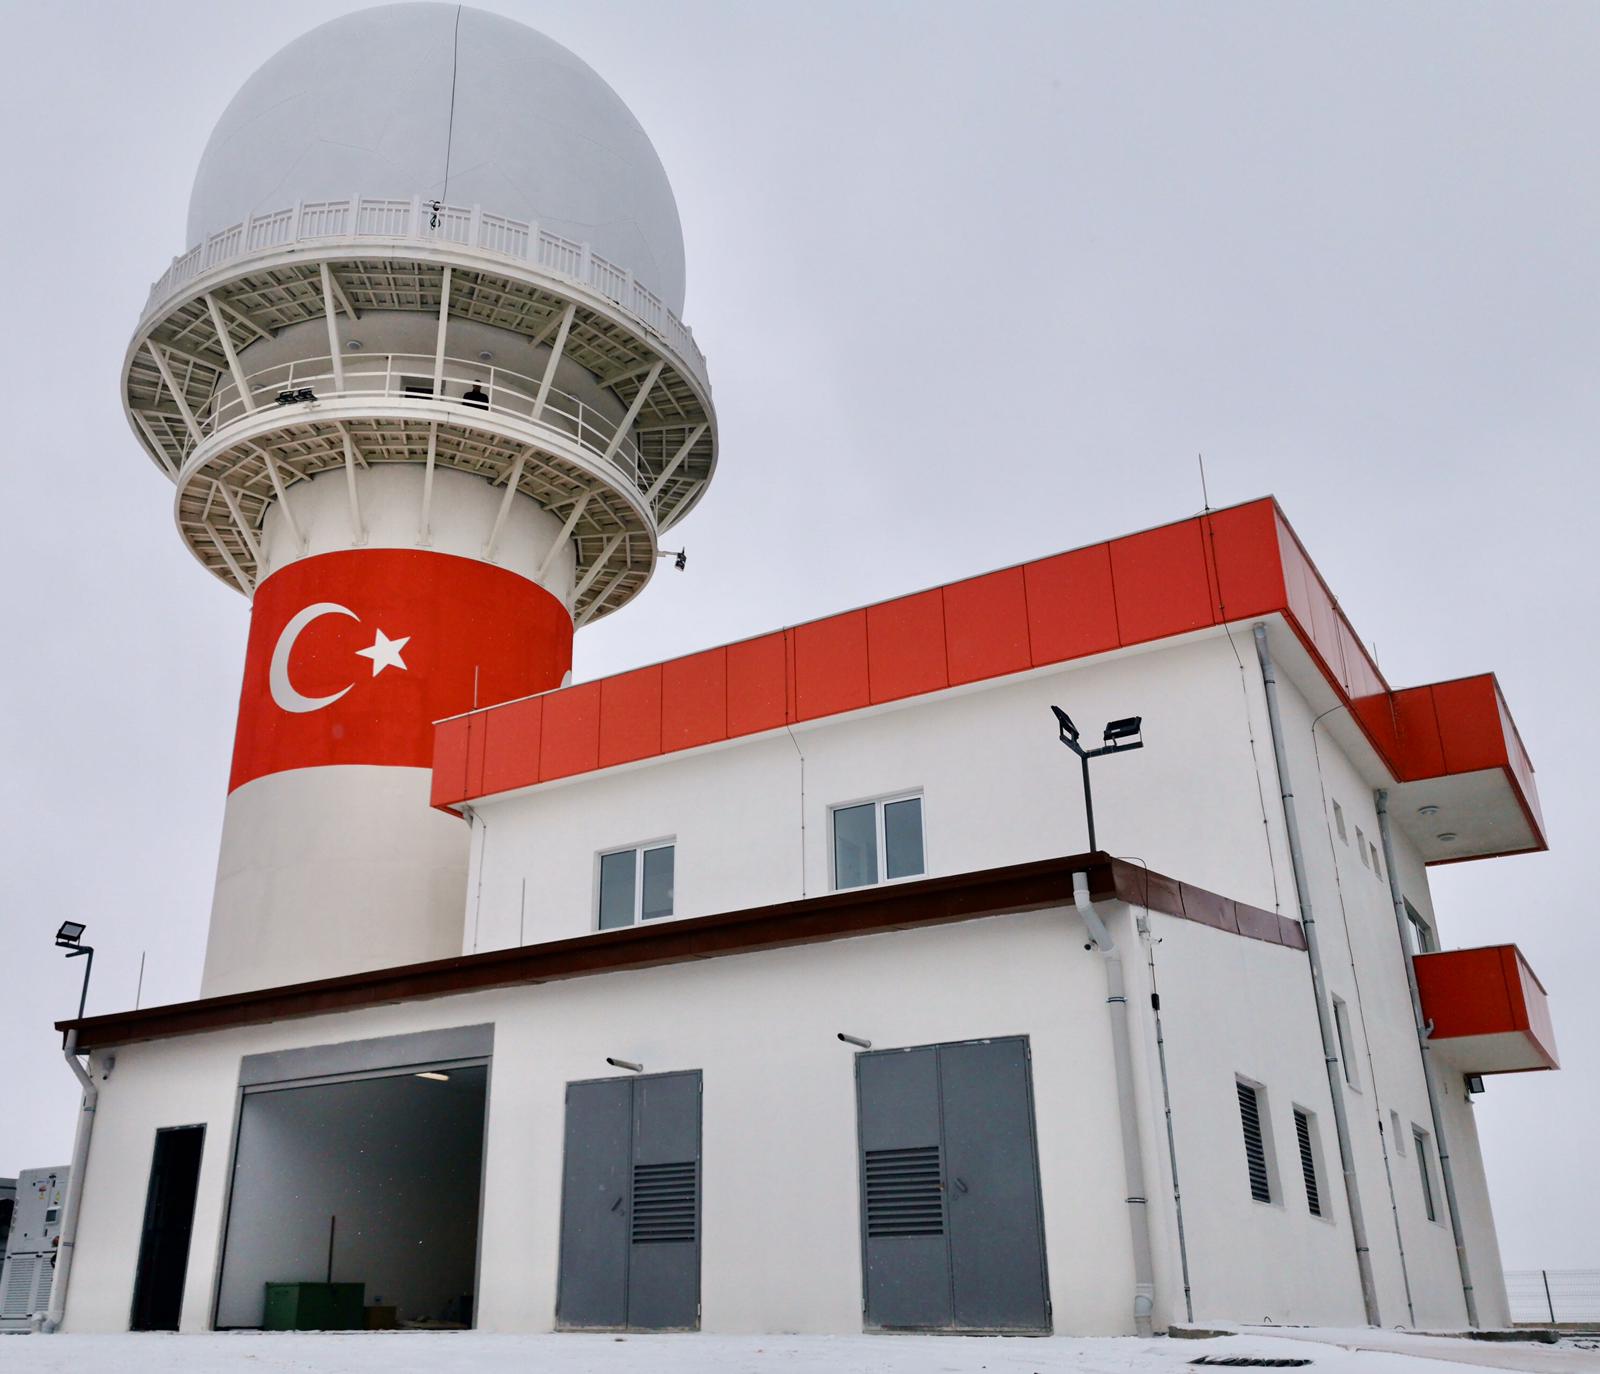 Türkiye'nin ilk sivil havacılık amaçlı yaklaşım radar sistemi Milli Gözetim Radarı'nda sona yaklaşıldı